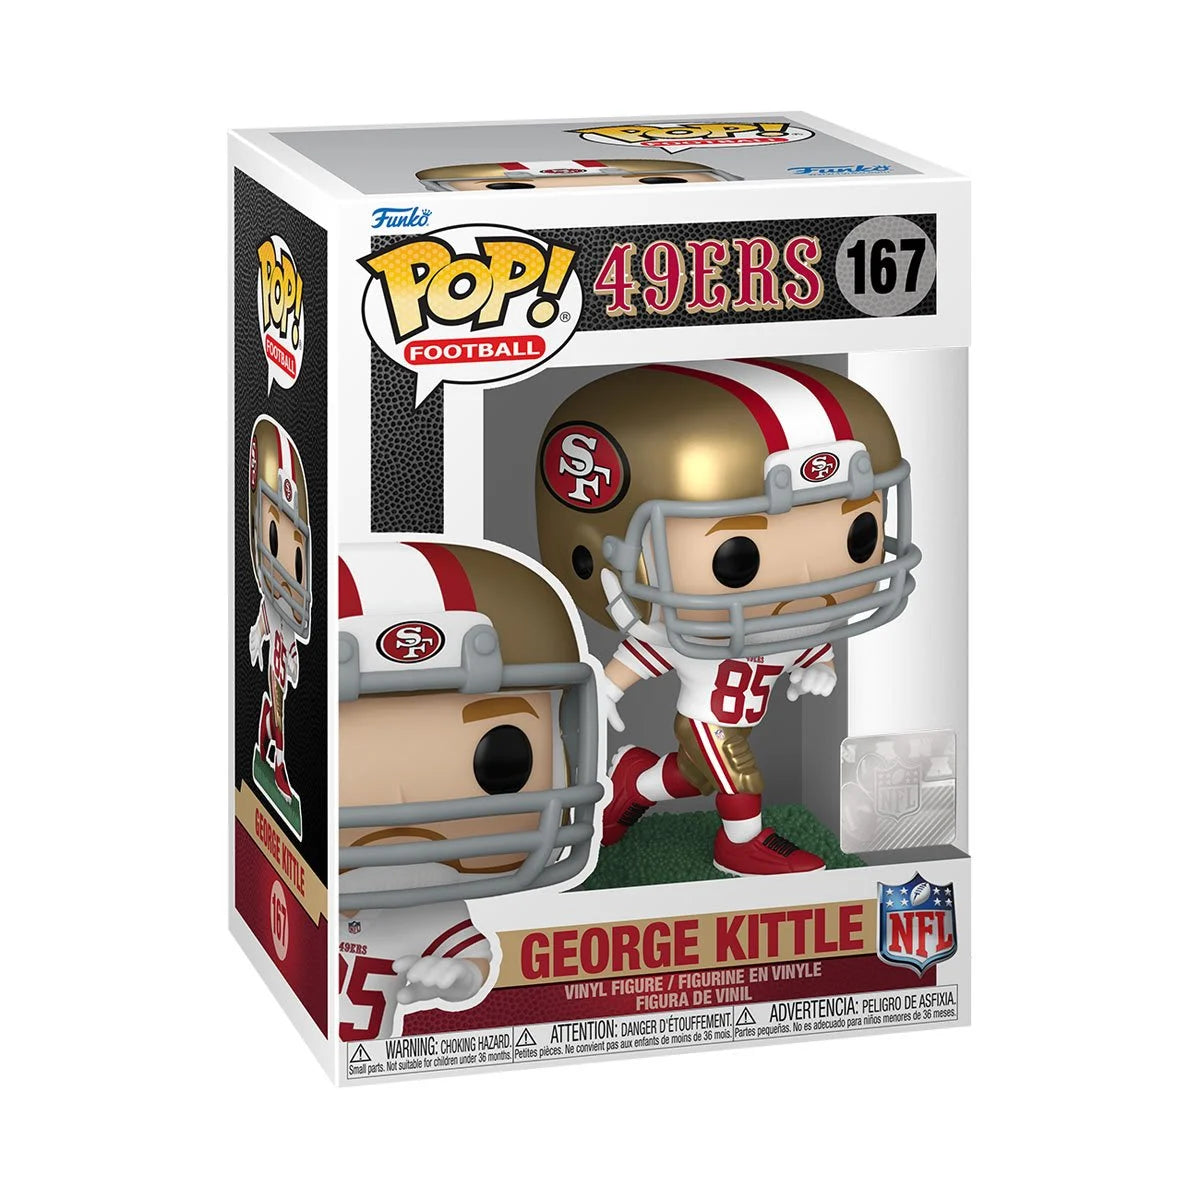 George Kittle NFL 49ers Pop! Vinyl Figure